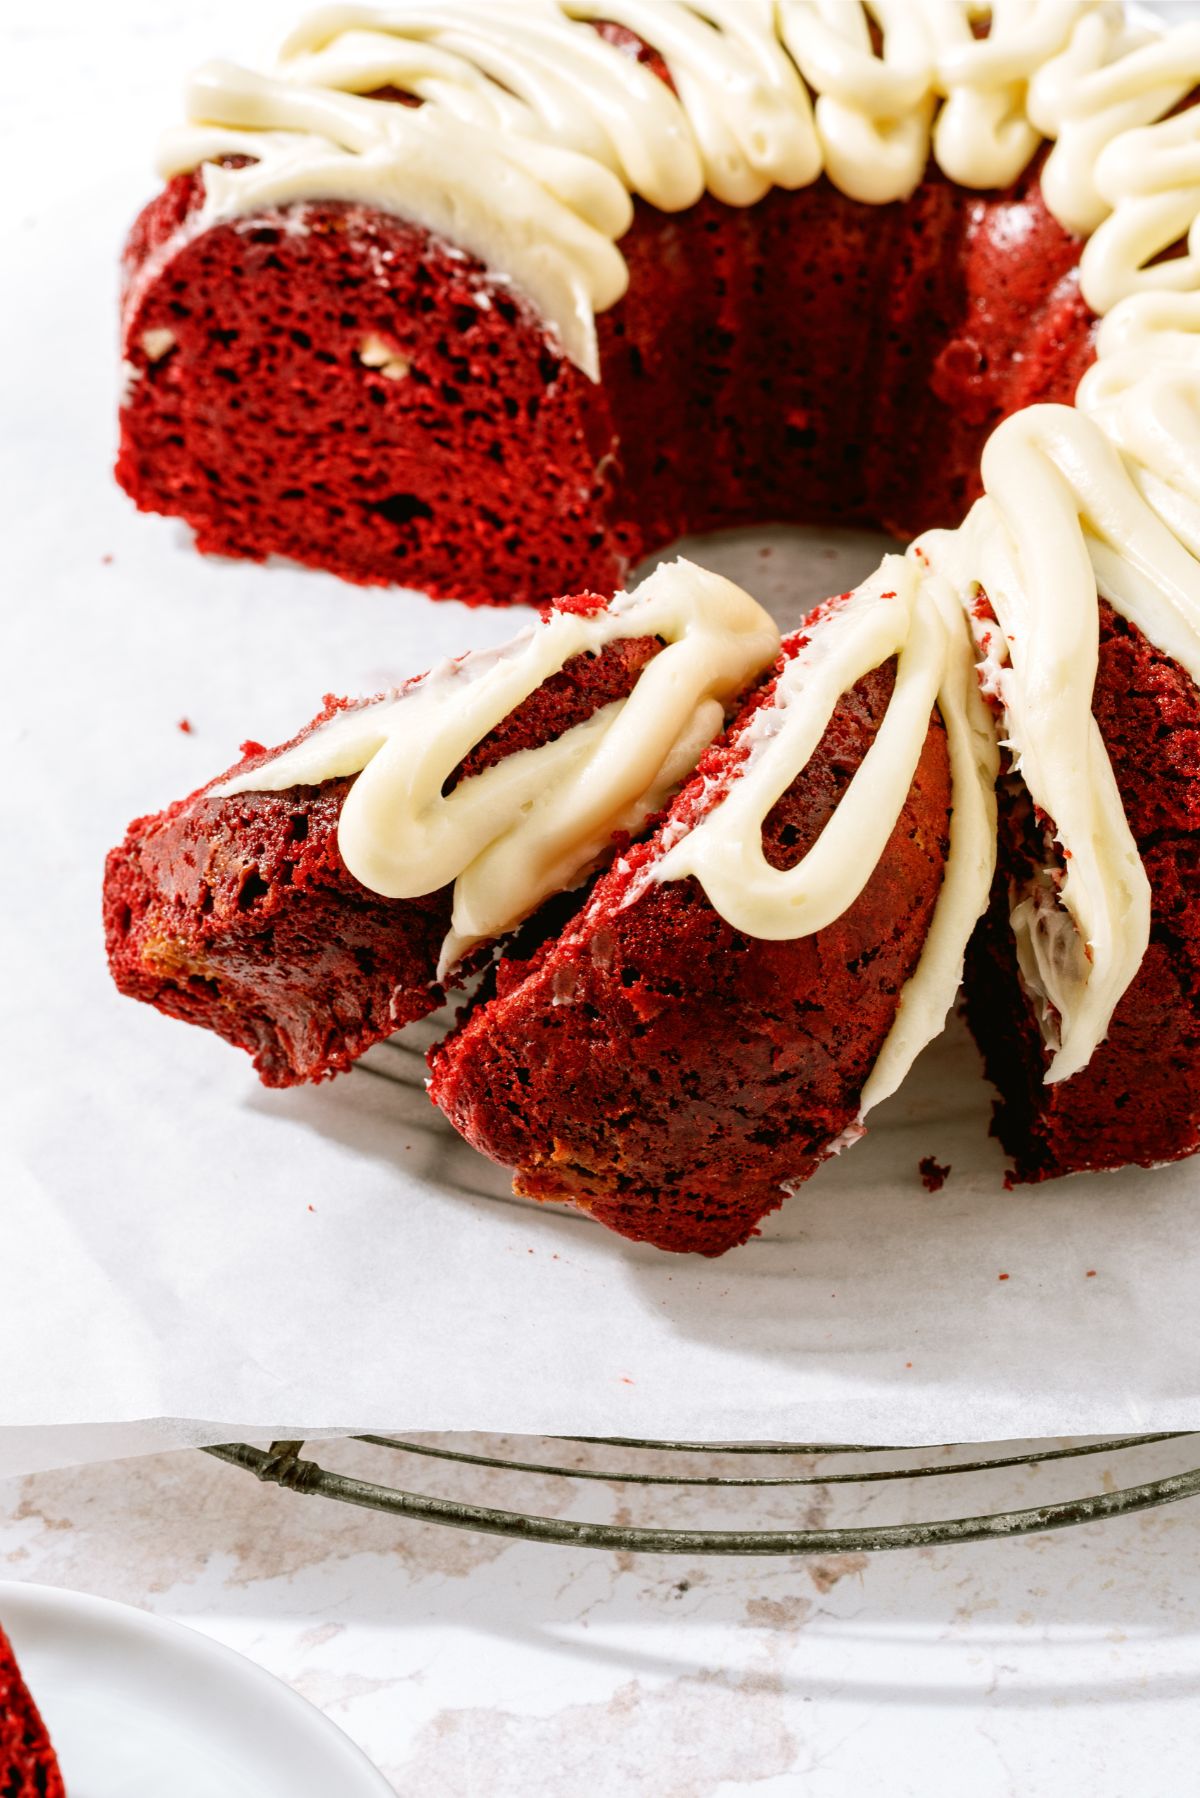 Red Velvet Bundt Cake sliced